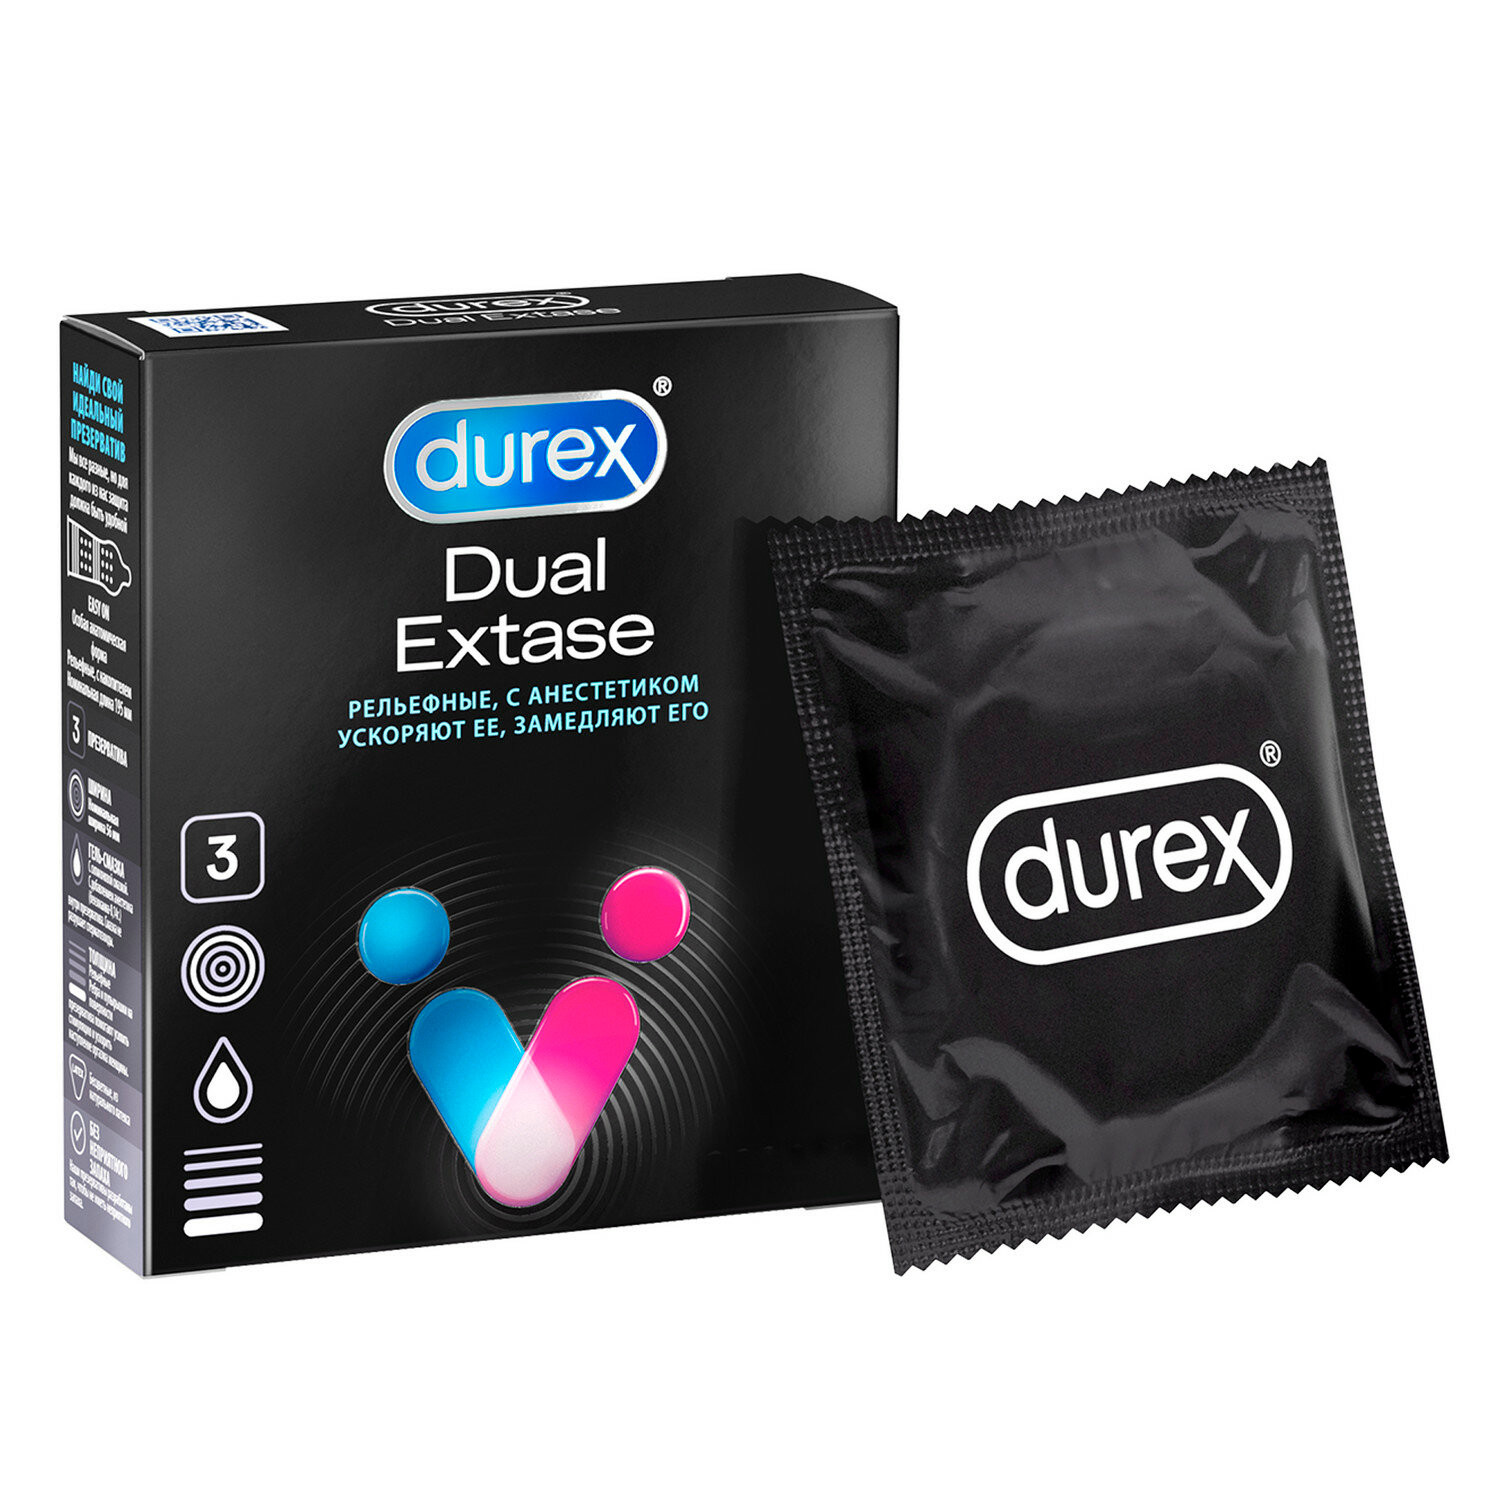 Презервативы Durex Dual Extase рельефные, с анестетиком 3 шт.